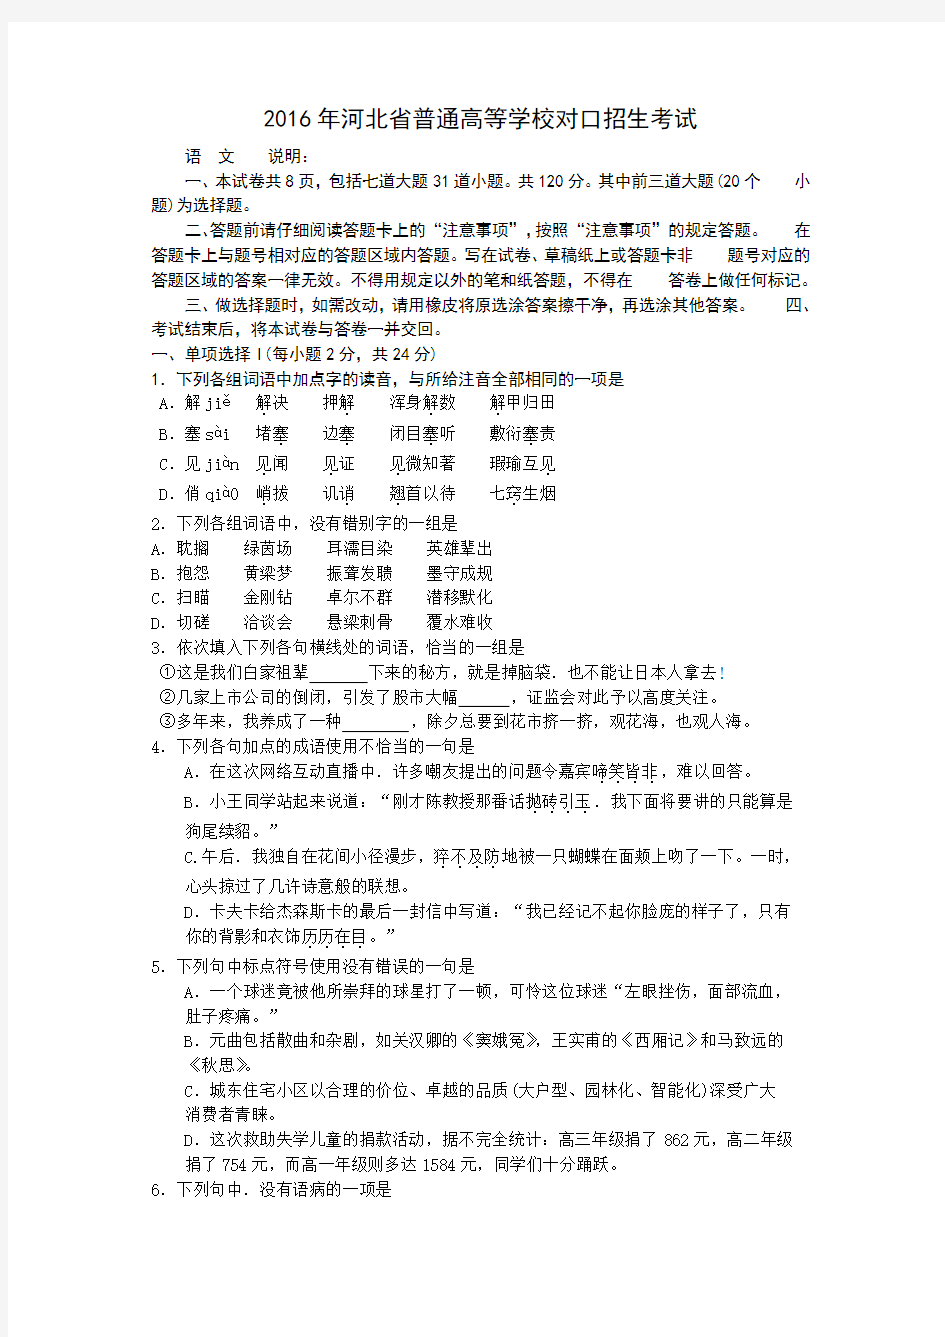 河北省普通高等学校对口招生考试试题及答案